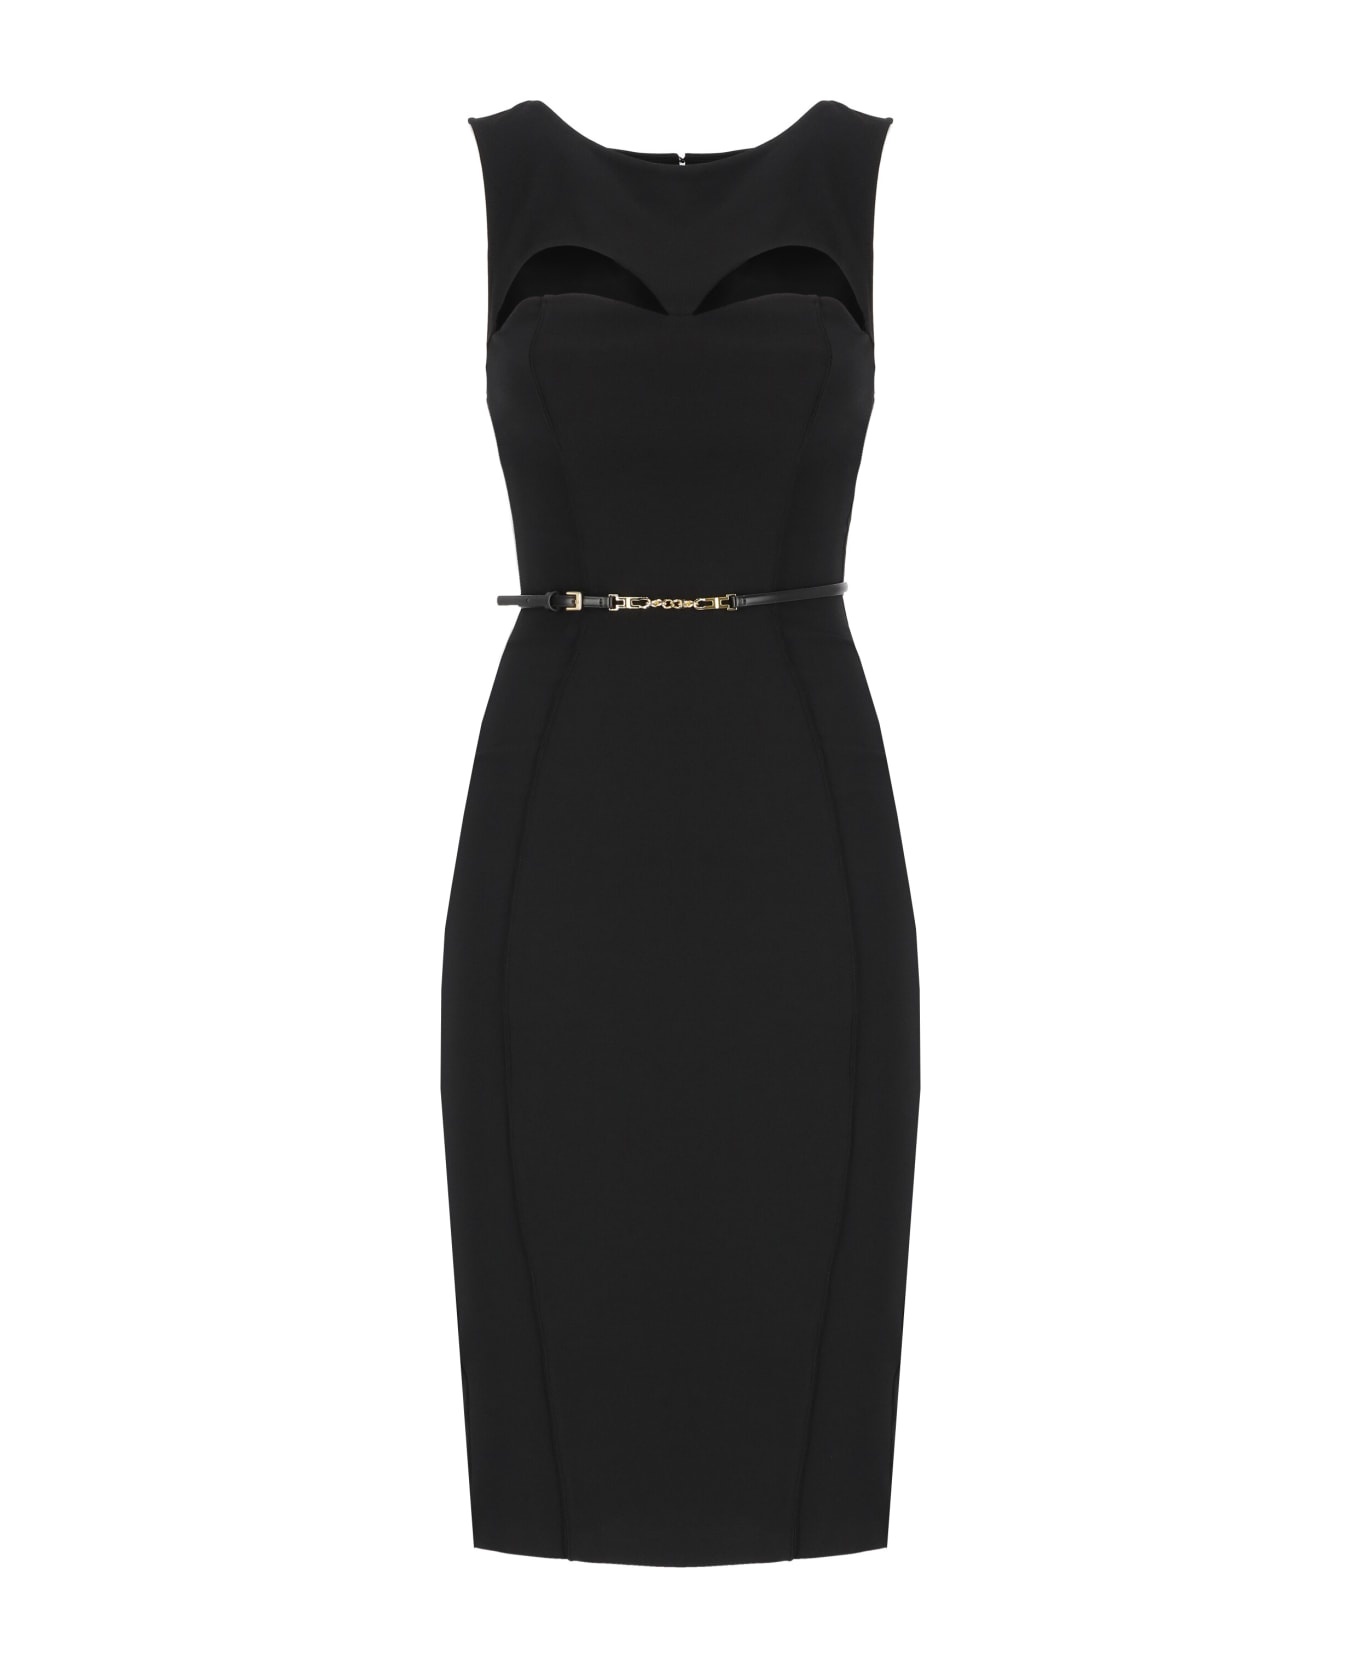 Elisabetta Franchi Dress With Cut Out Detail - Black